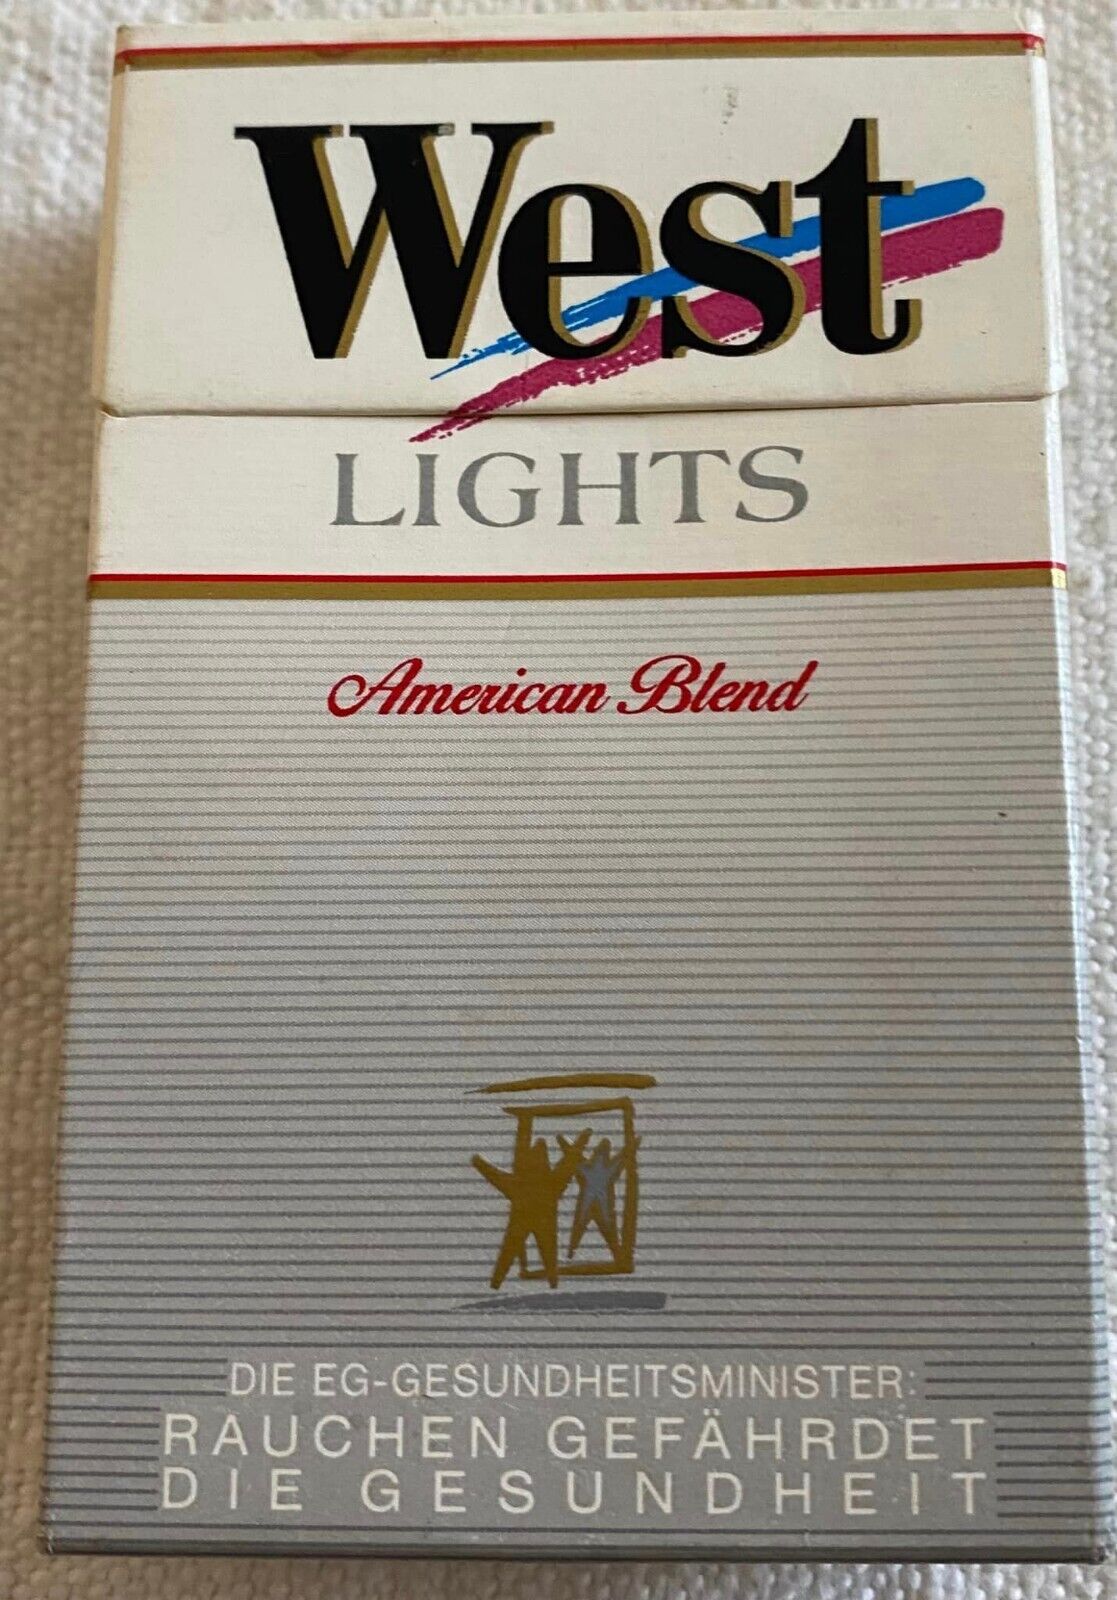 Vintage West Lights Cigarette Cigarettes Cigarette Paper Box Empty Cigarette